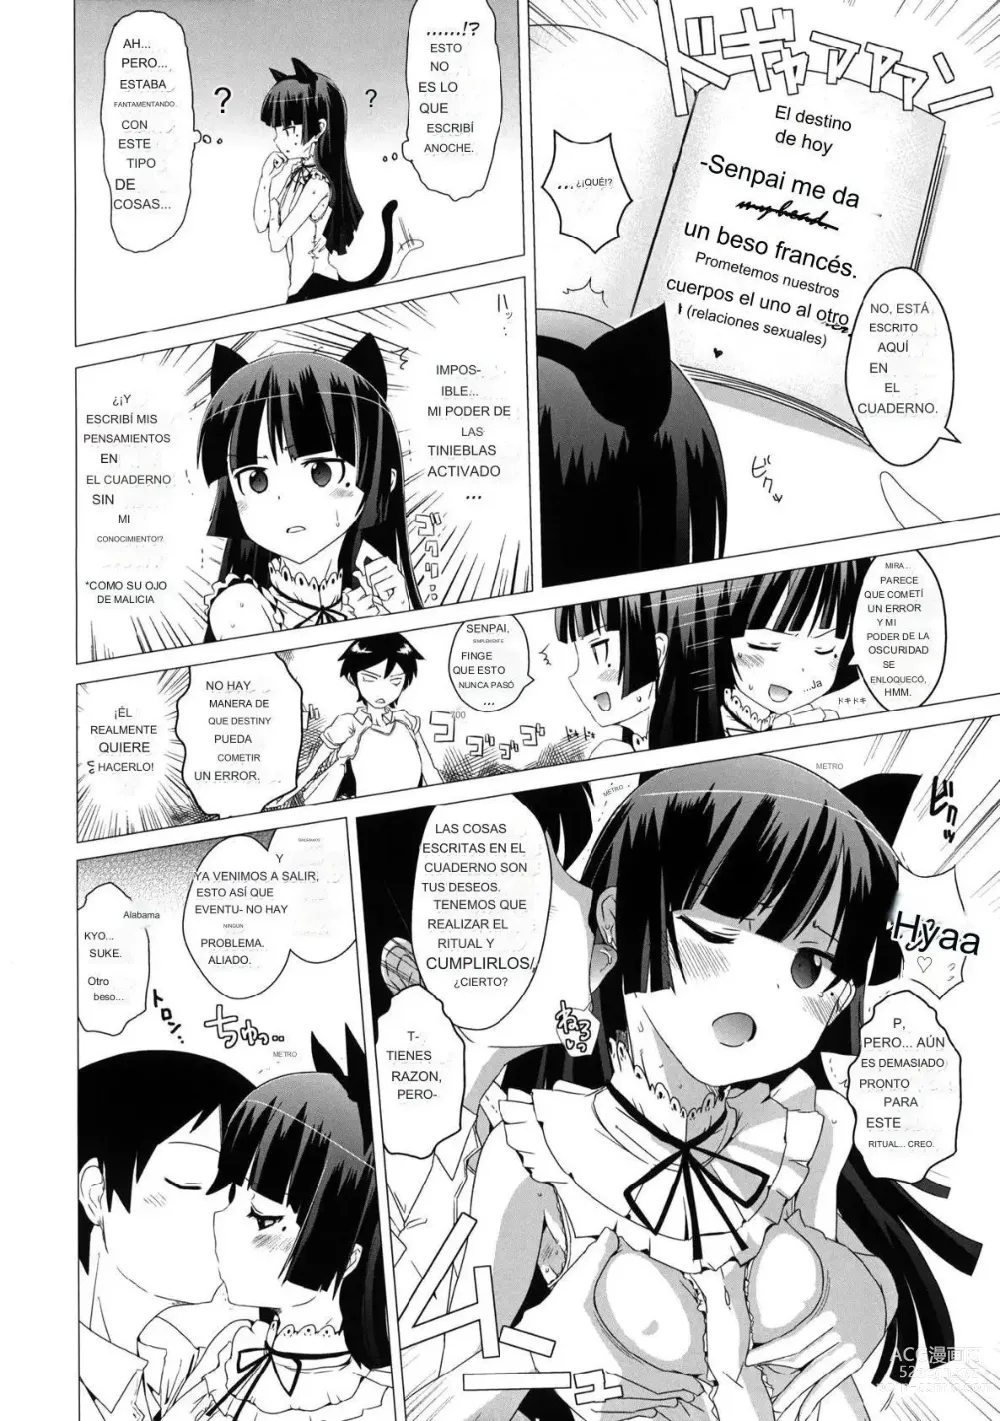 Page 5 of doujinshi Namanurui Kuroneko + Paper